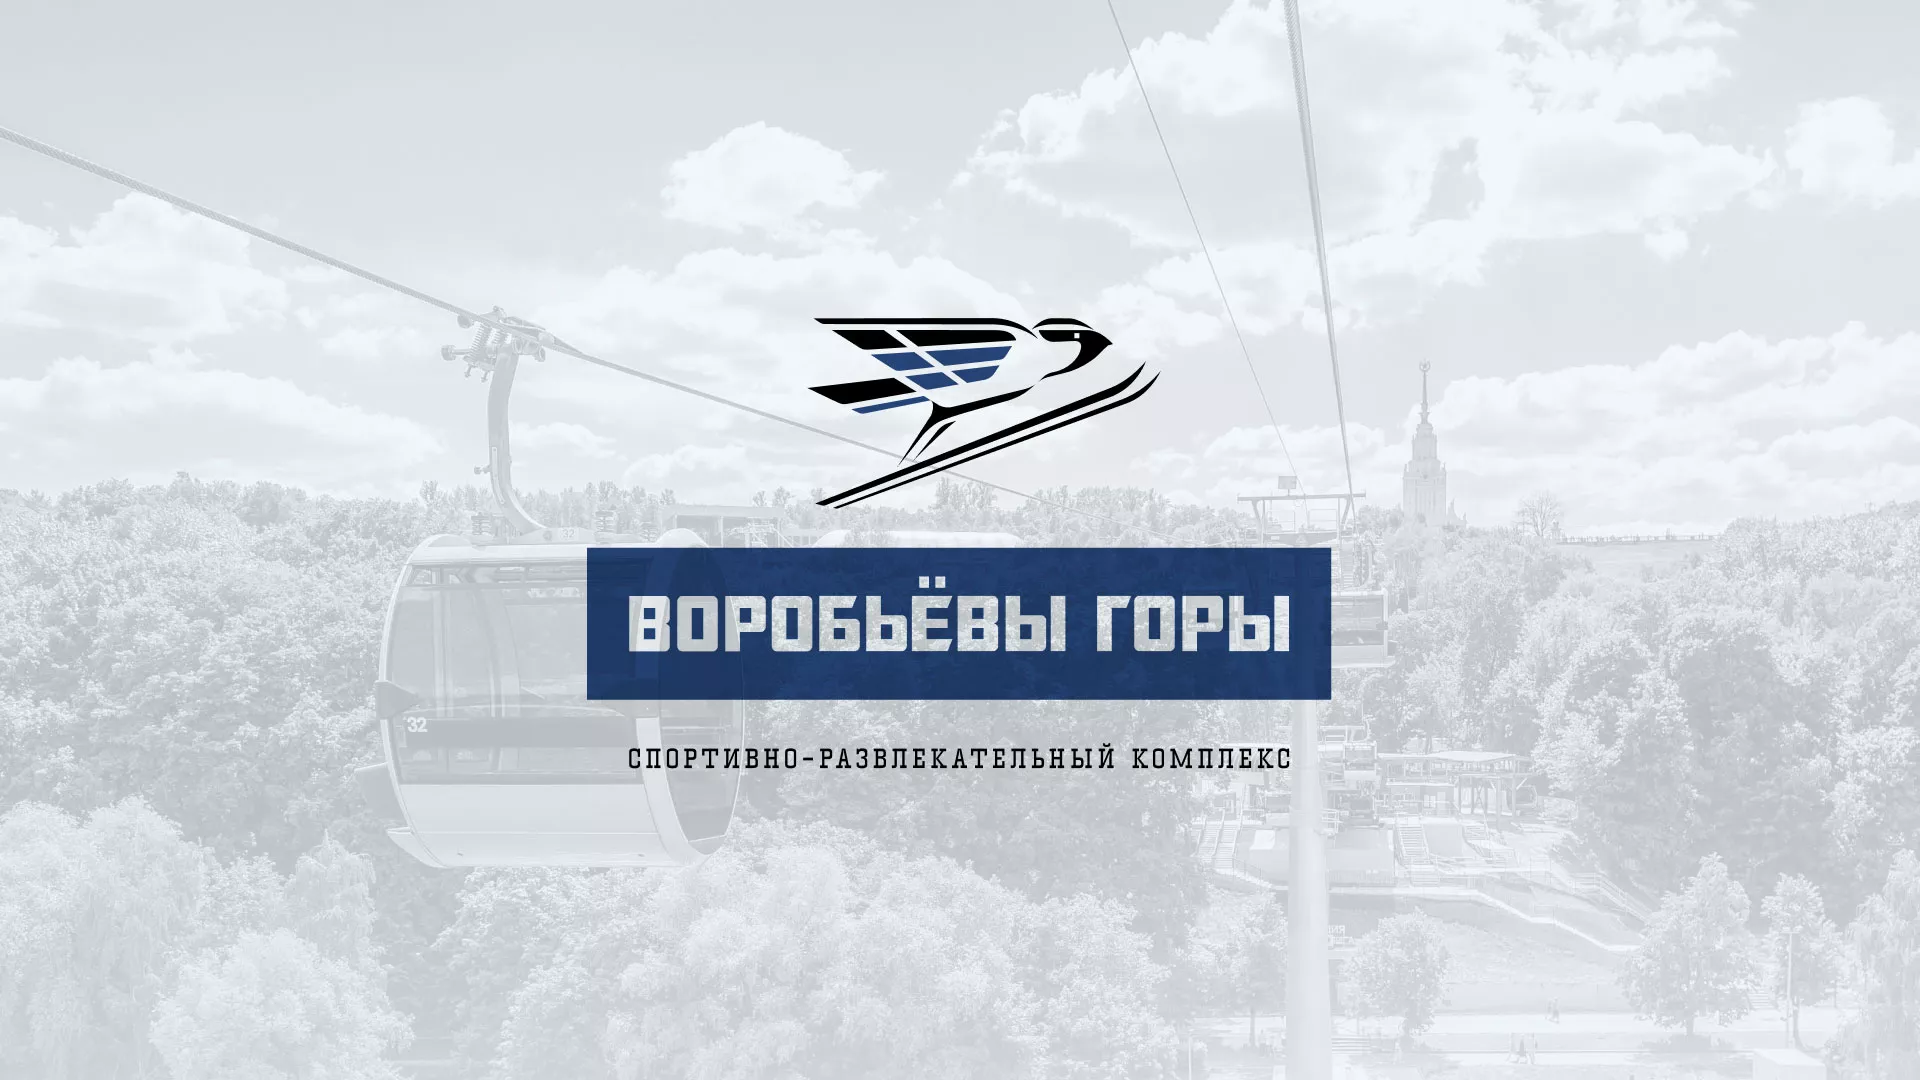 Разработка сайта в Егорьевске для спортивно-развлекательного комплекса «Воробьёвы горы»